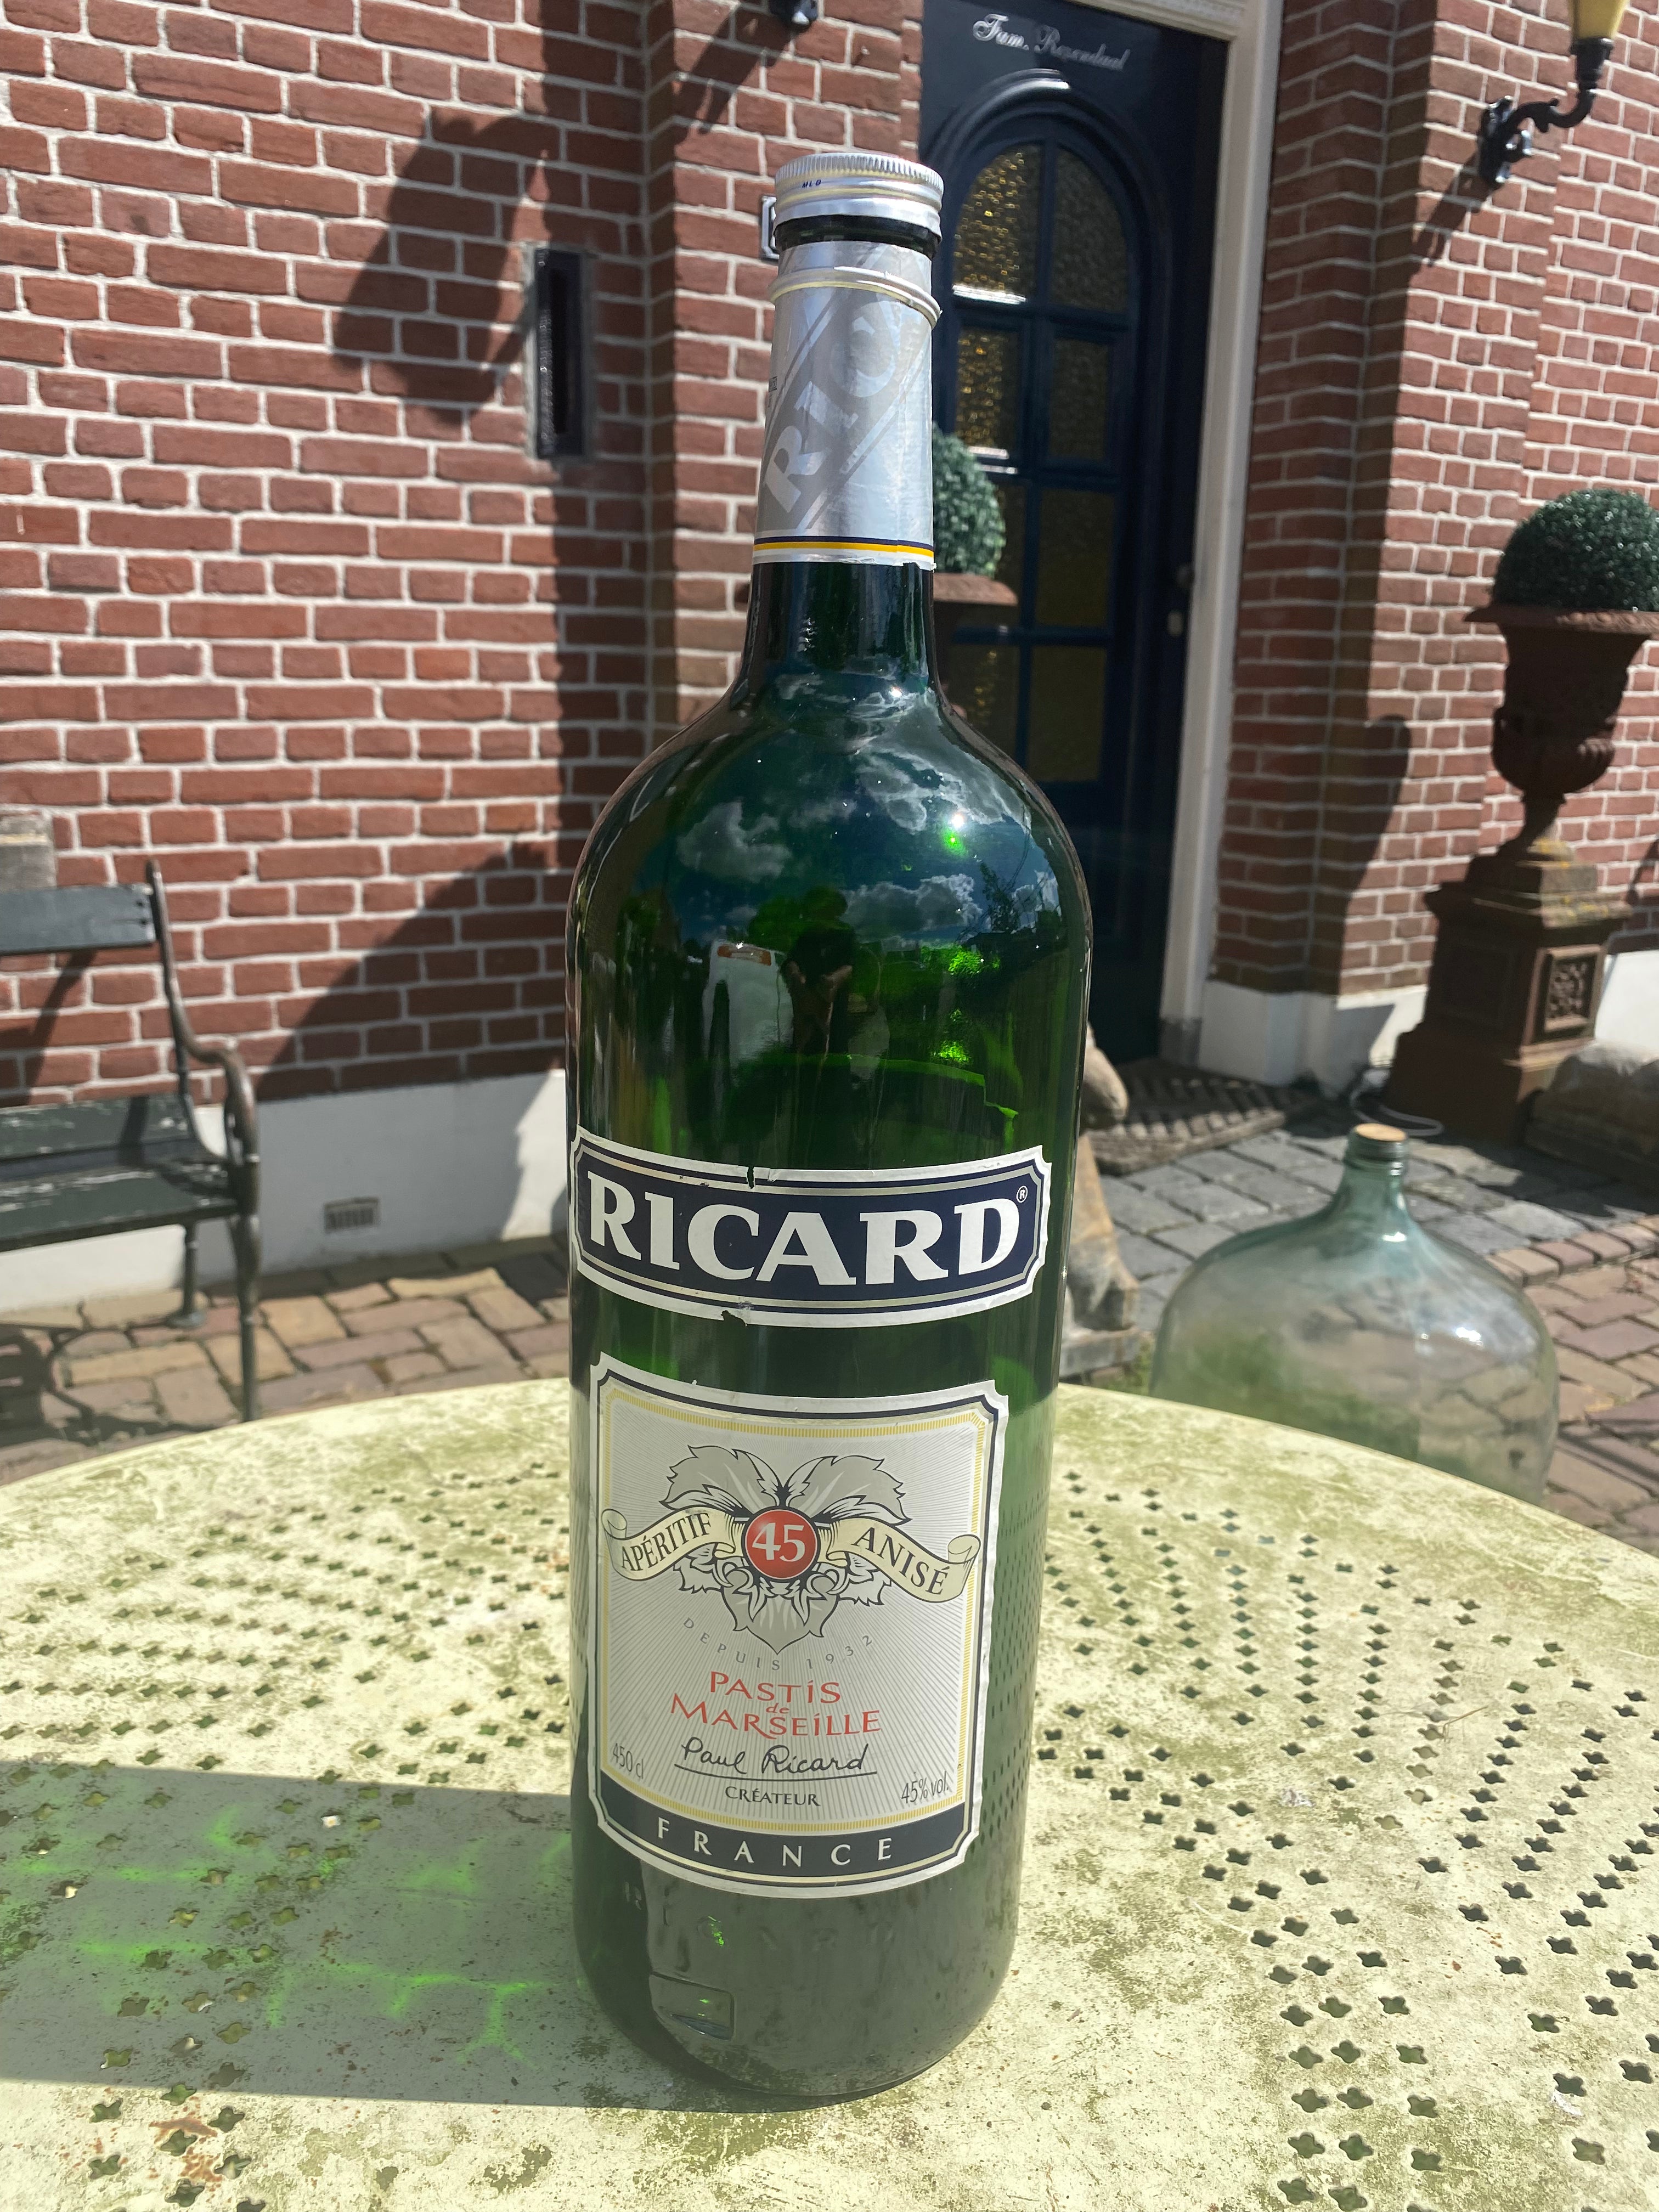 Stoere fles Ricard uit Frankrijk - Brocante bij Ingie